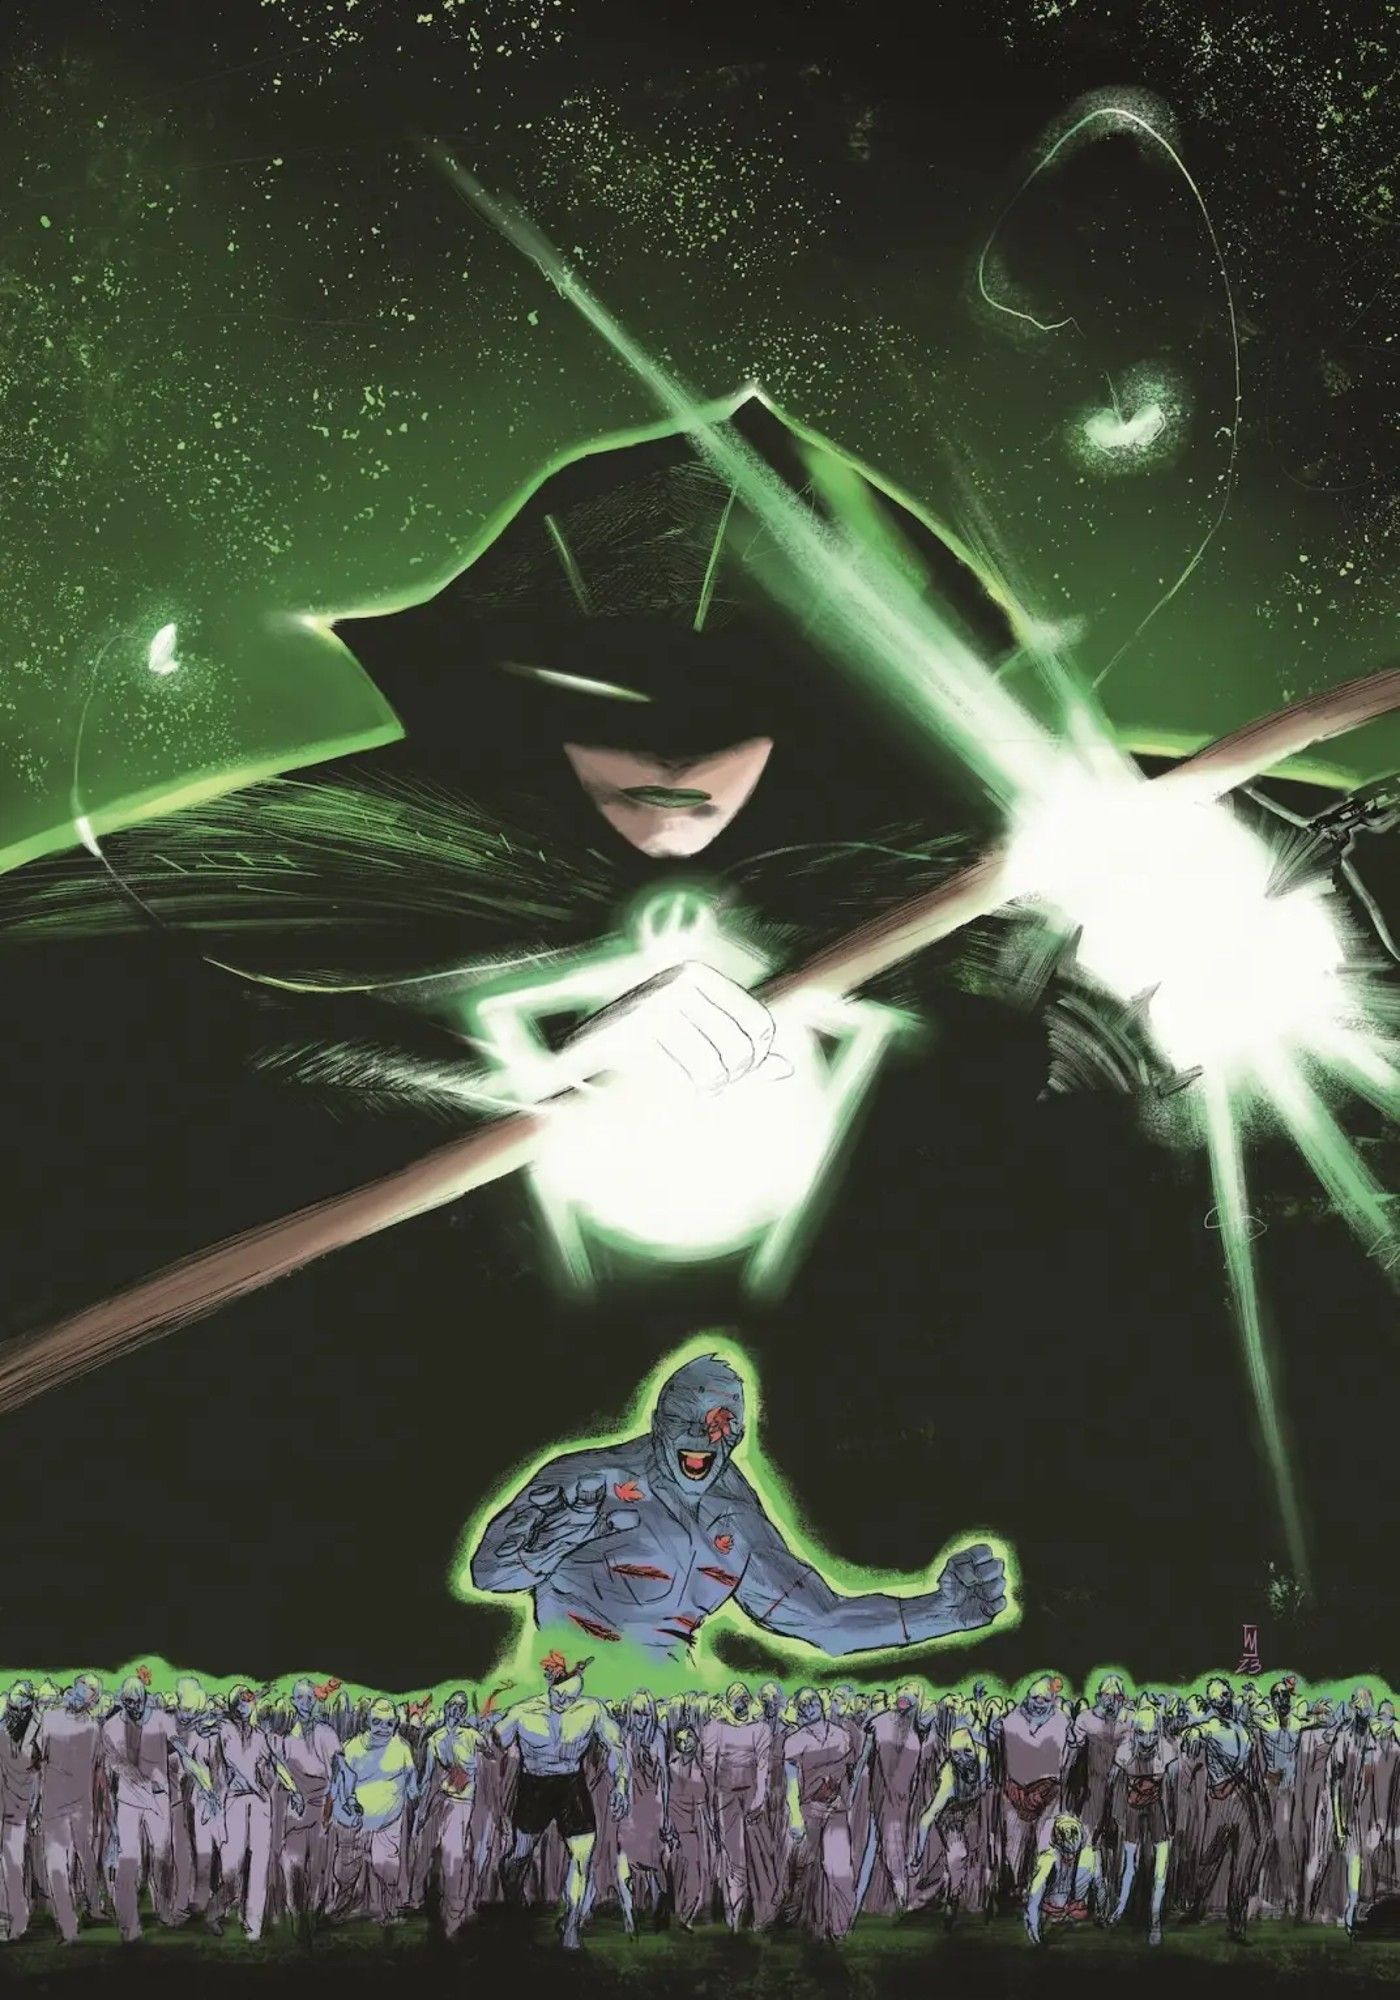 Capa principal do Lanterna Verde Sombrio 1: A Lanterna Verde Rina Mori paira sobre uma horda de zumbis.